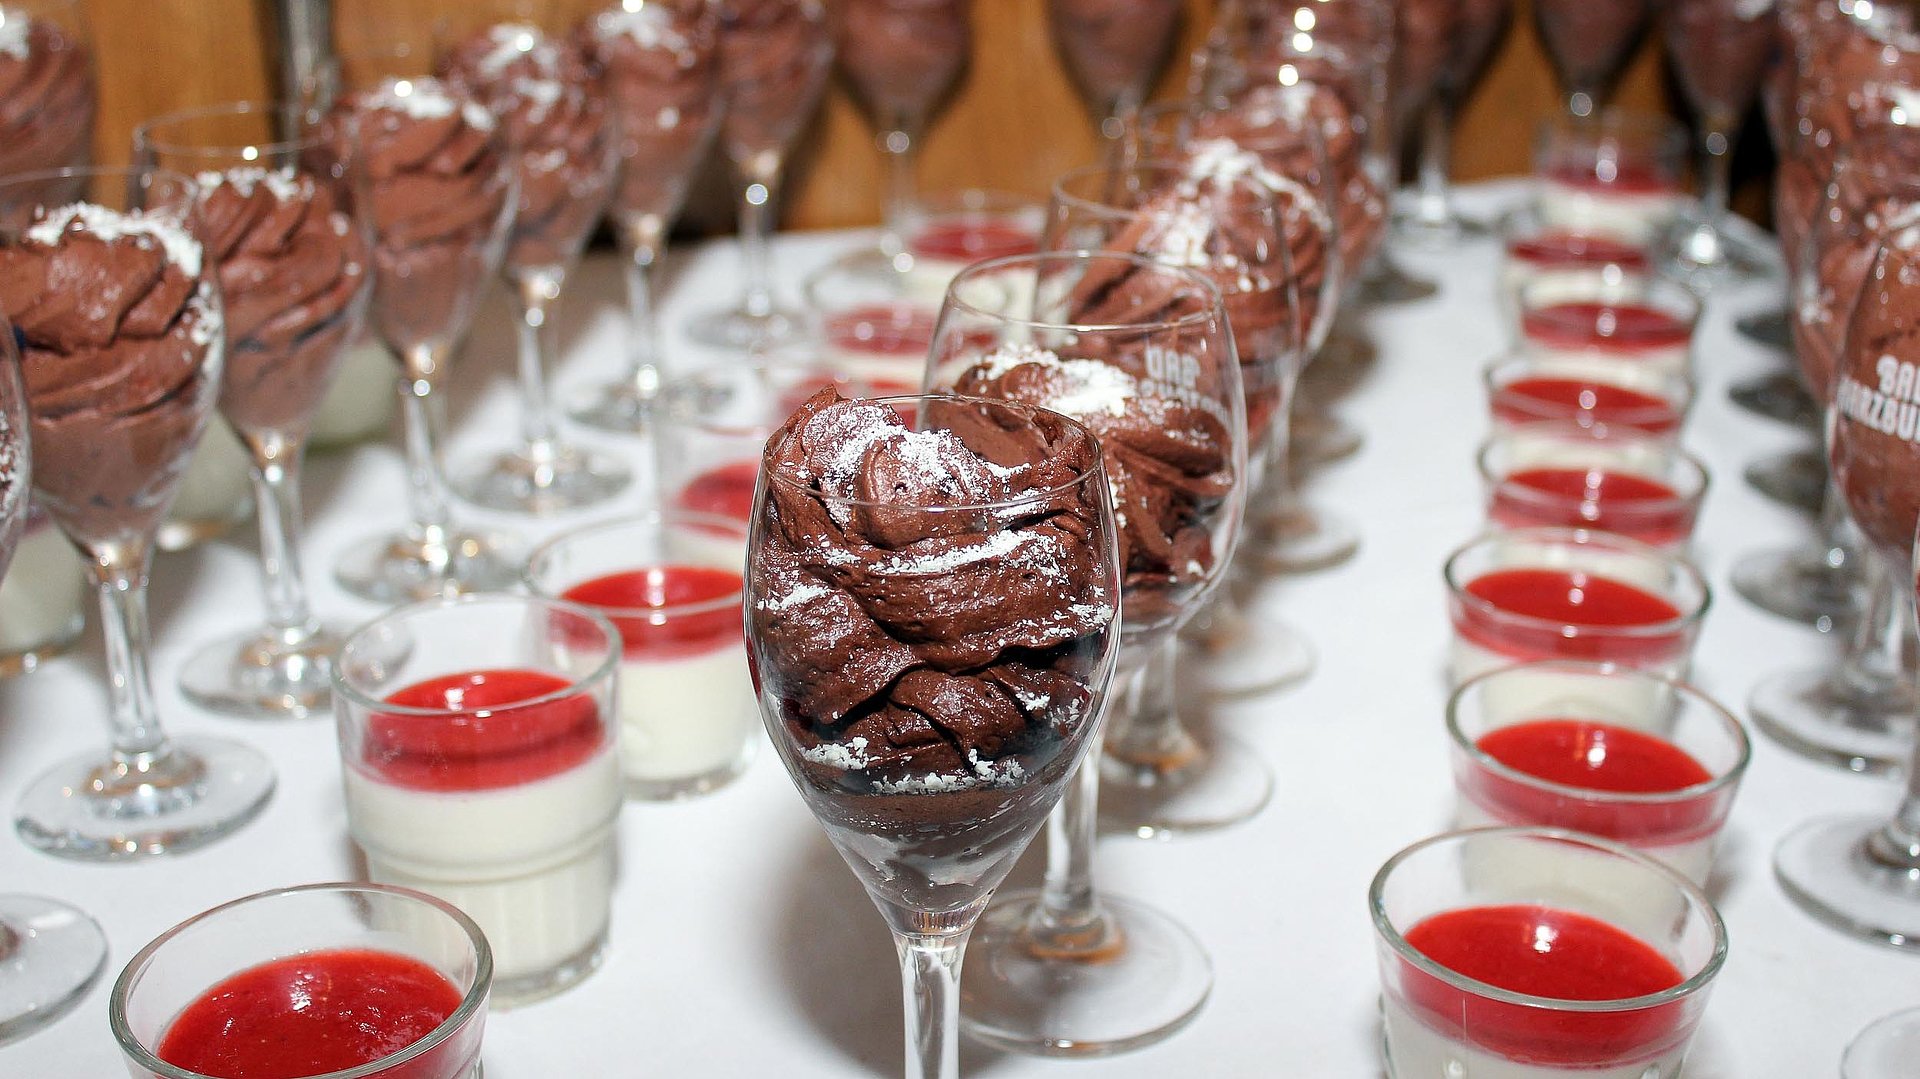 Kommunion und Konfirmation in Nürnberg - Passende Gastronomie und Restaurants - Tisch voll mit Schokoladen-Mousse 